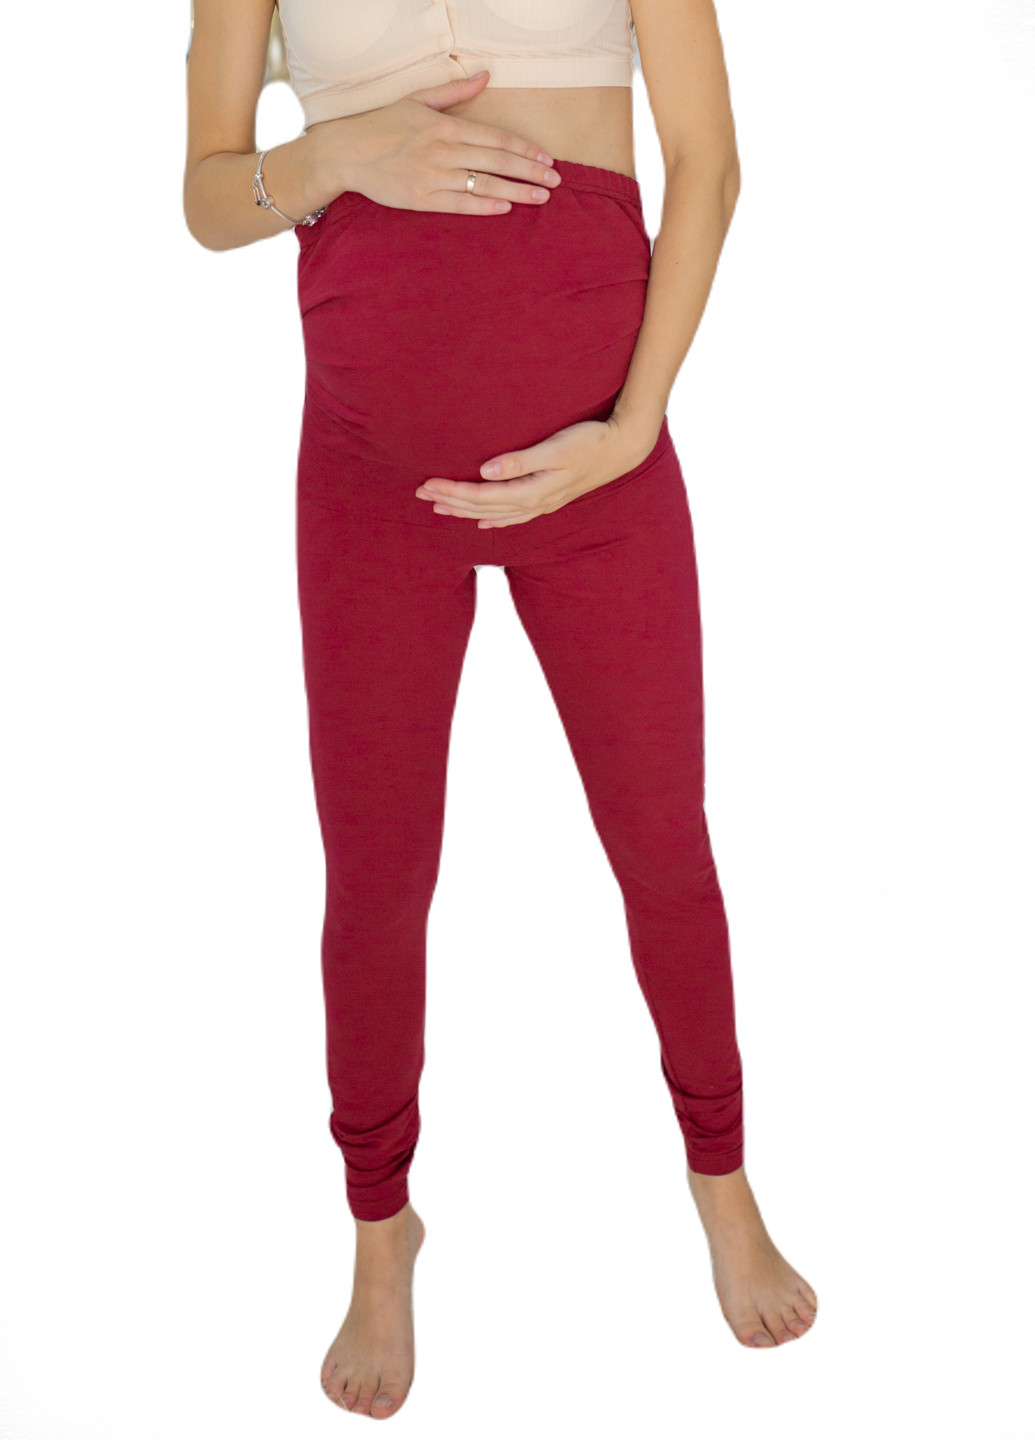 630104 Лосины для беременных трикотажные Красные HN (221955011)